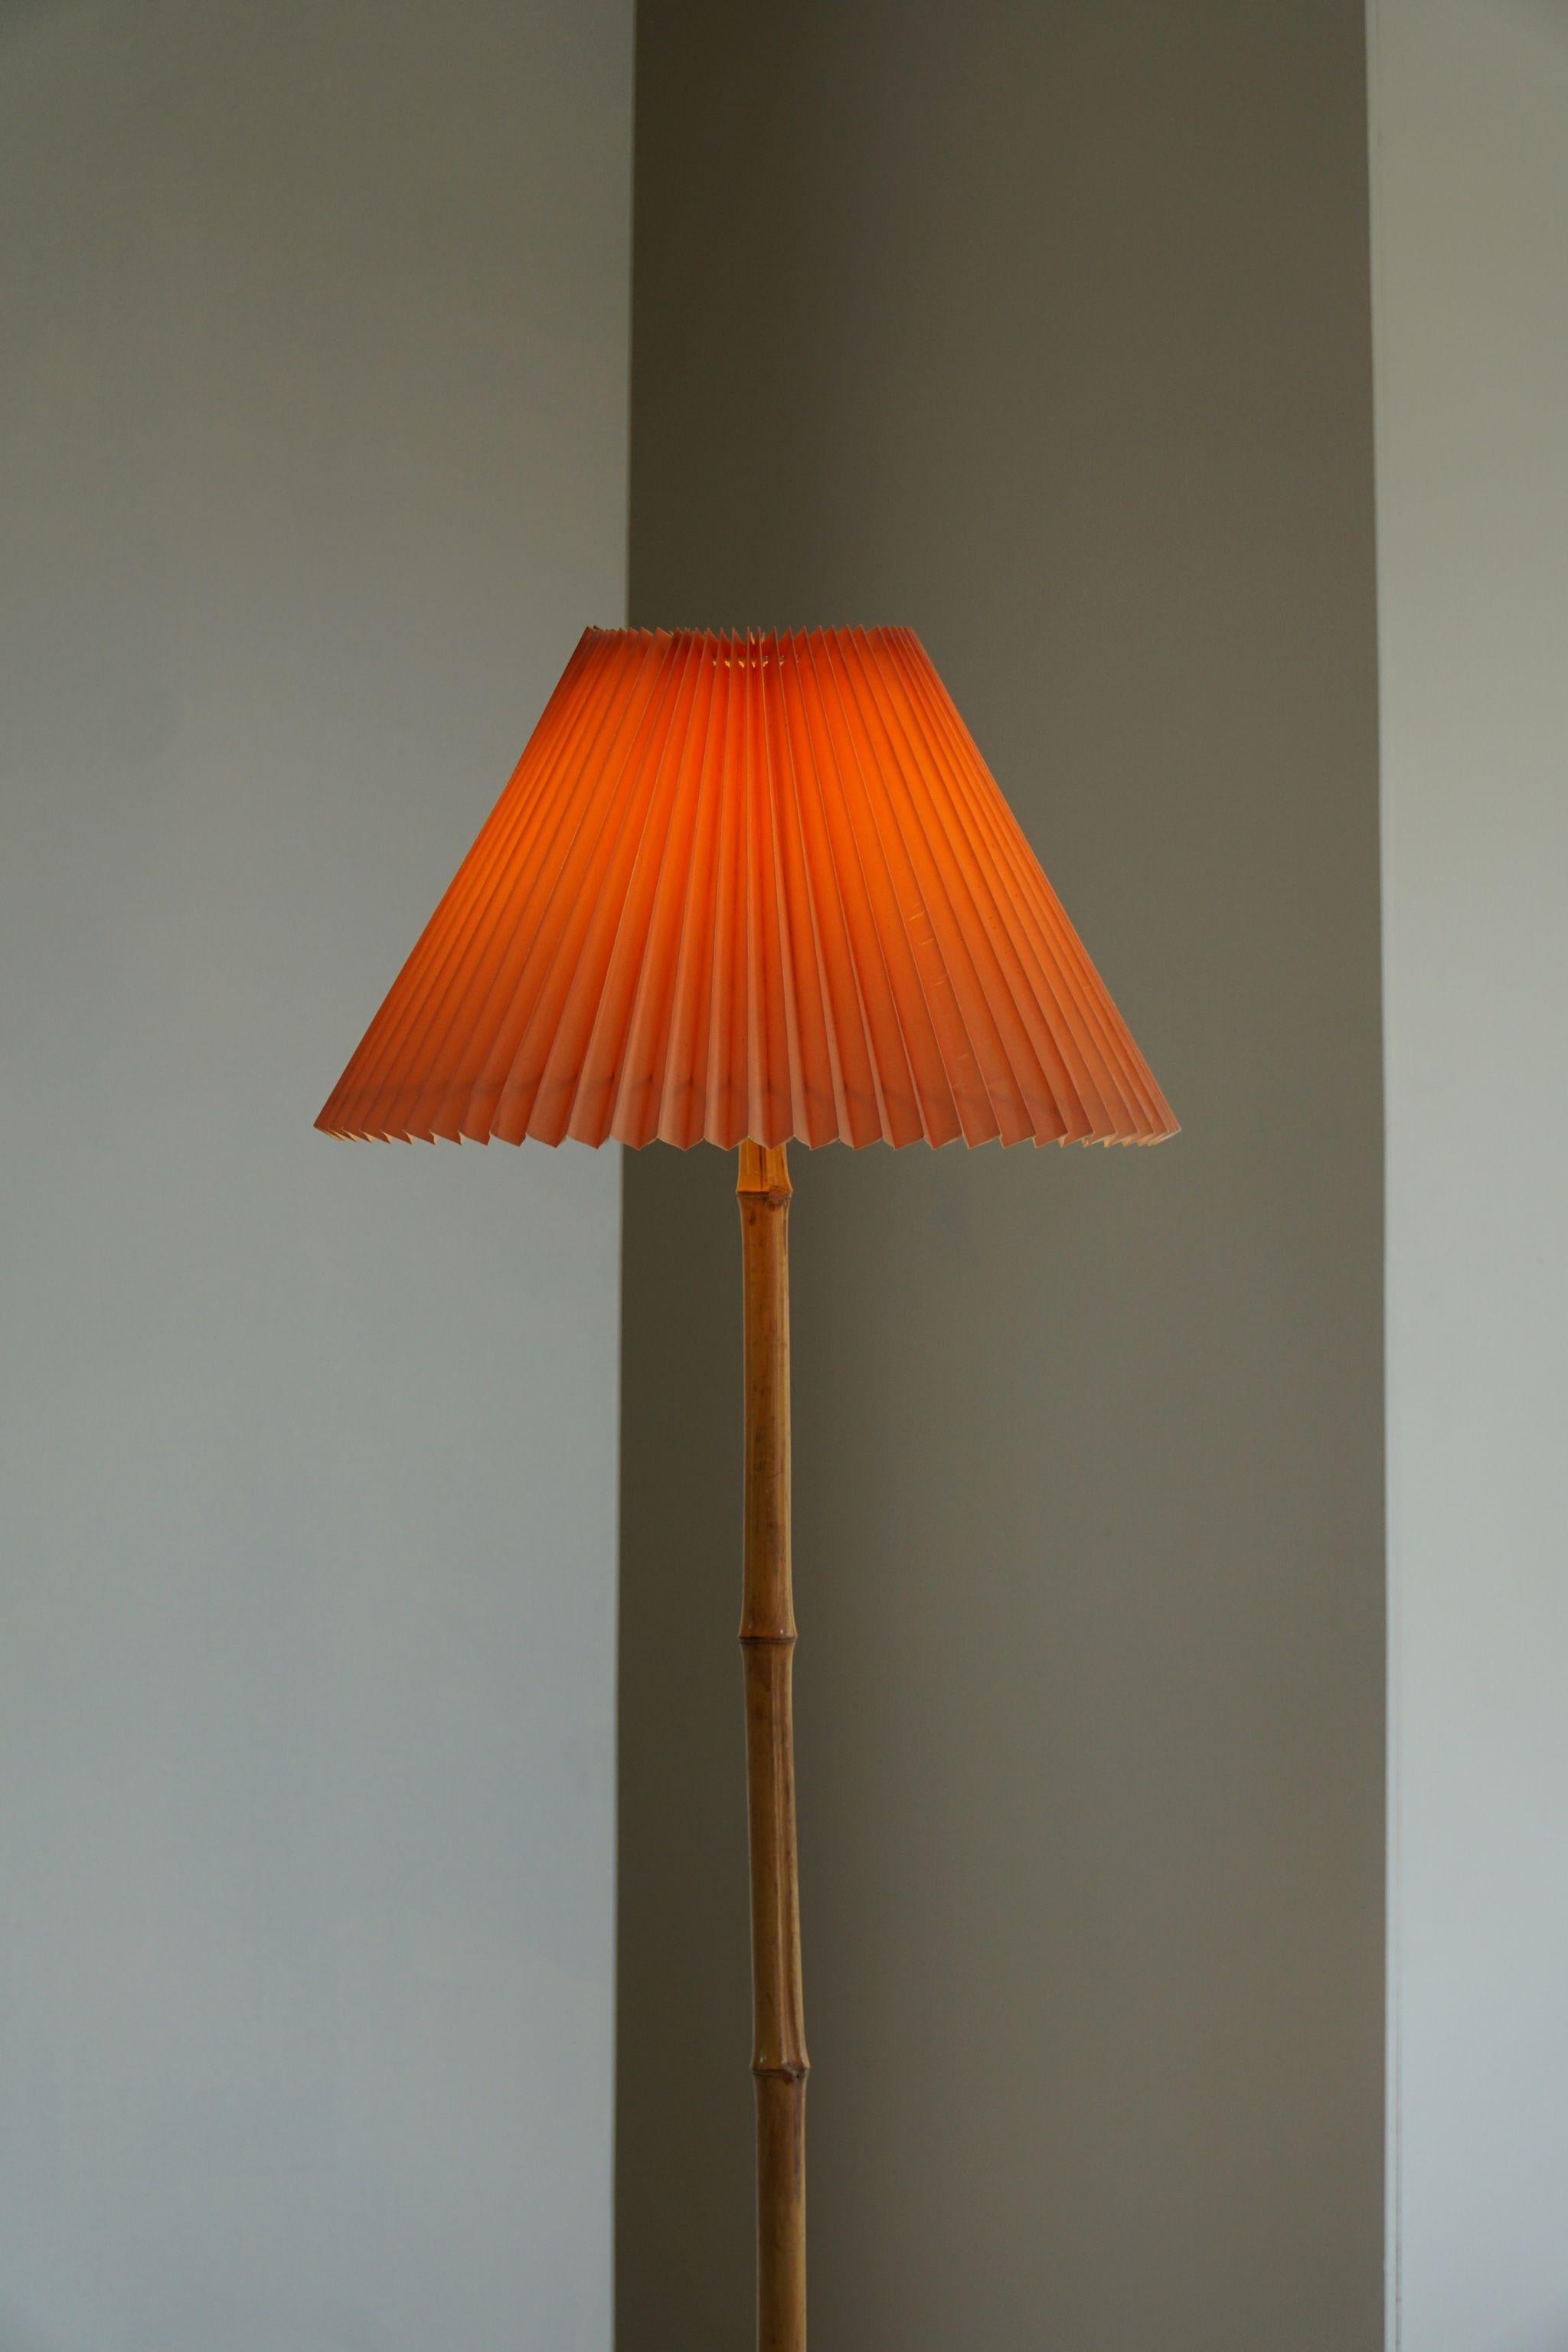 Art Deco Italian Modern Bamboo Floor Lamp, Minimalist, 1970s